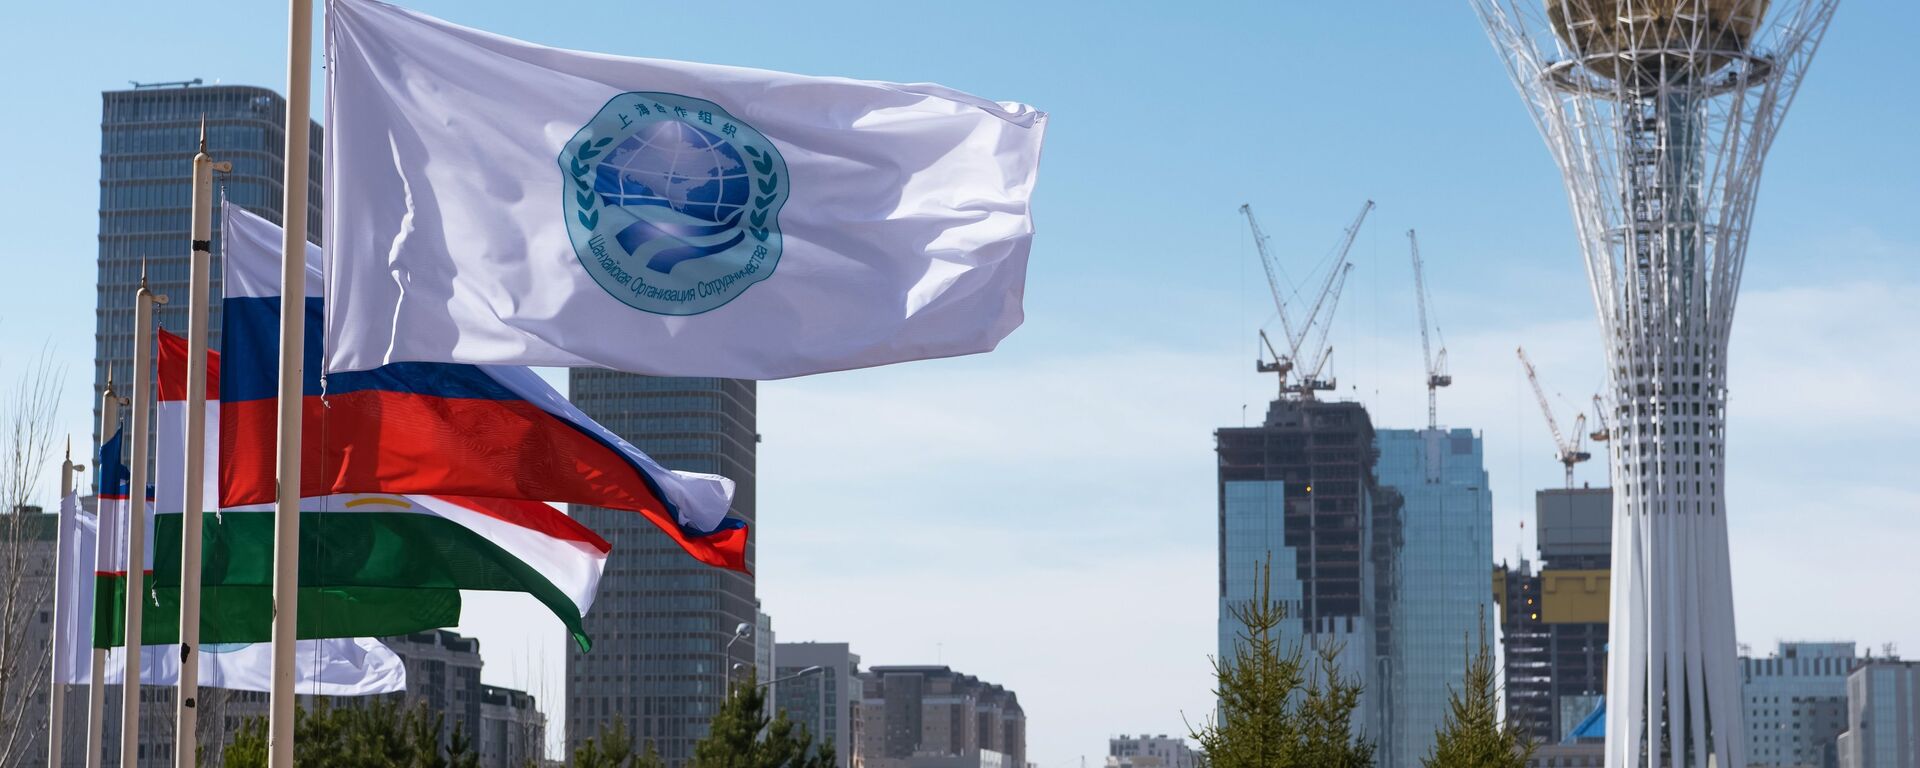 La bandera de la Organización de Cooperación de Shanghái (OCS) y las banderas de sus miembros, Astaná, Kasajistán - Sputnik Mundo, 1920, 04.09.2021